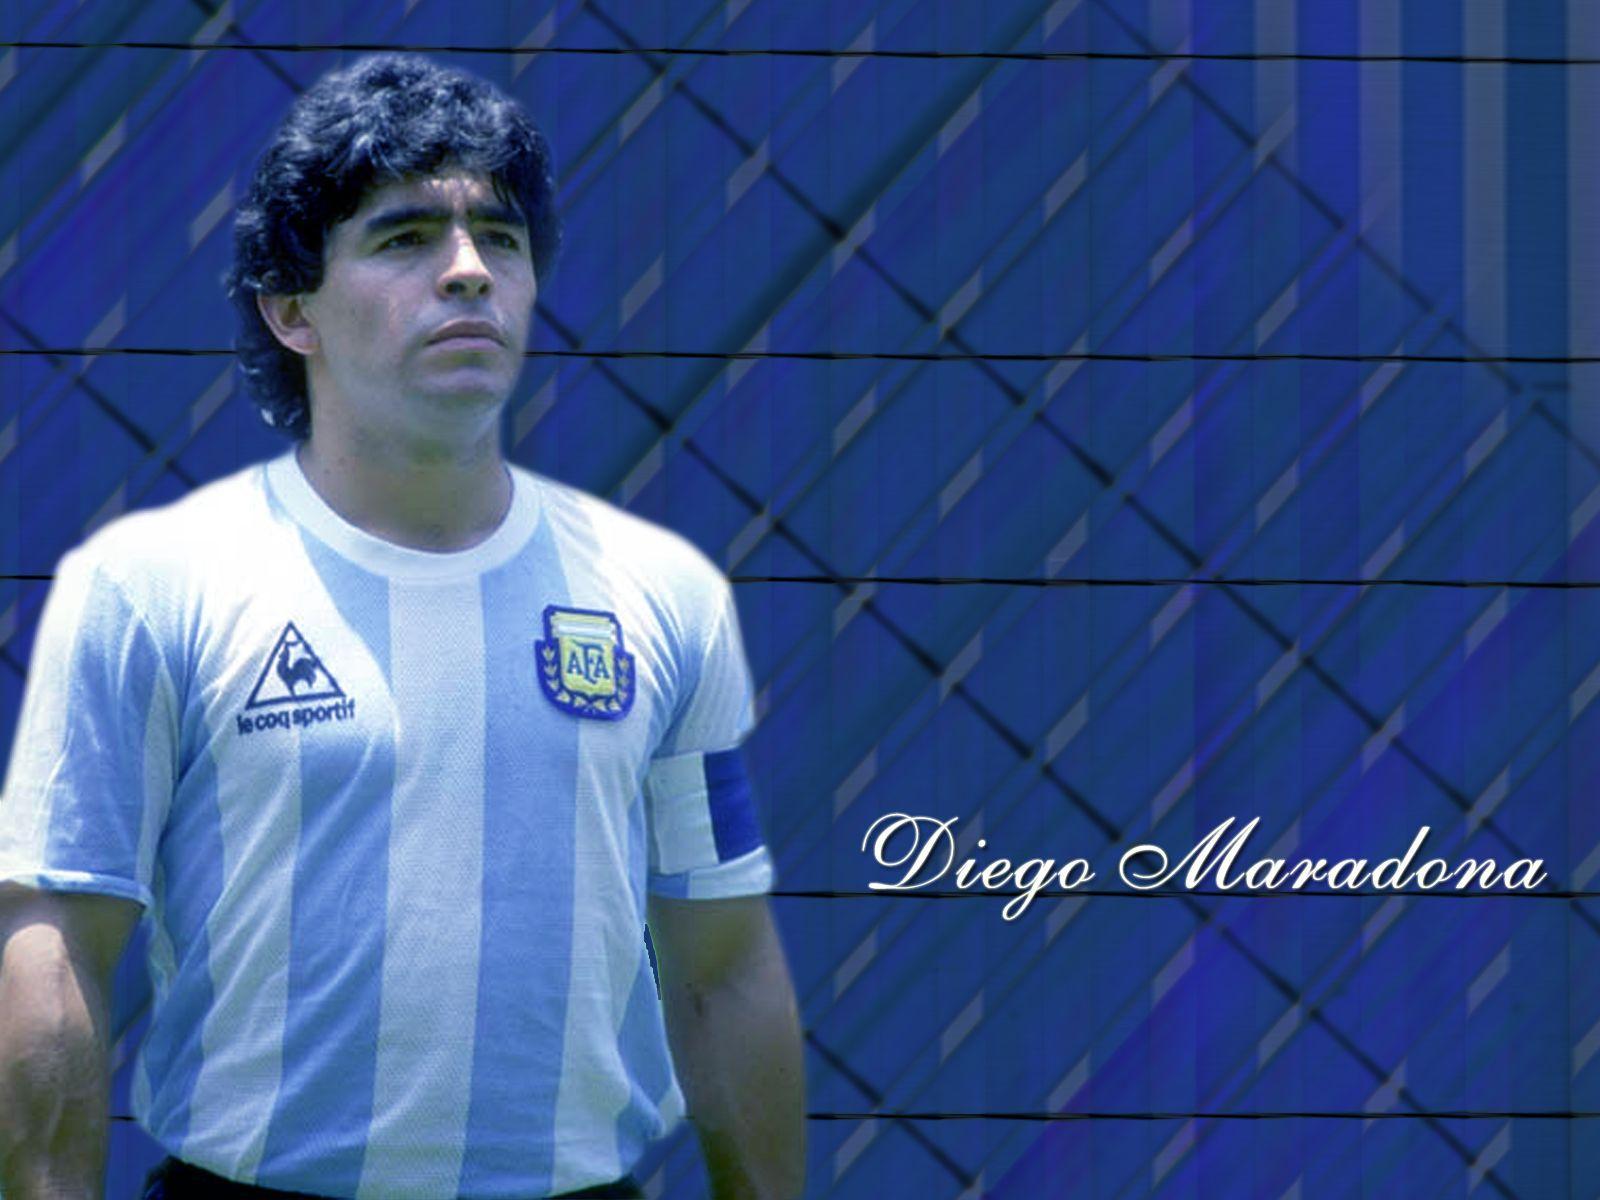 Maradona Wallpaper HD